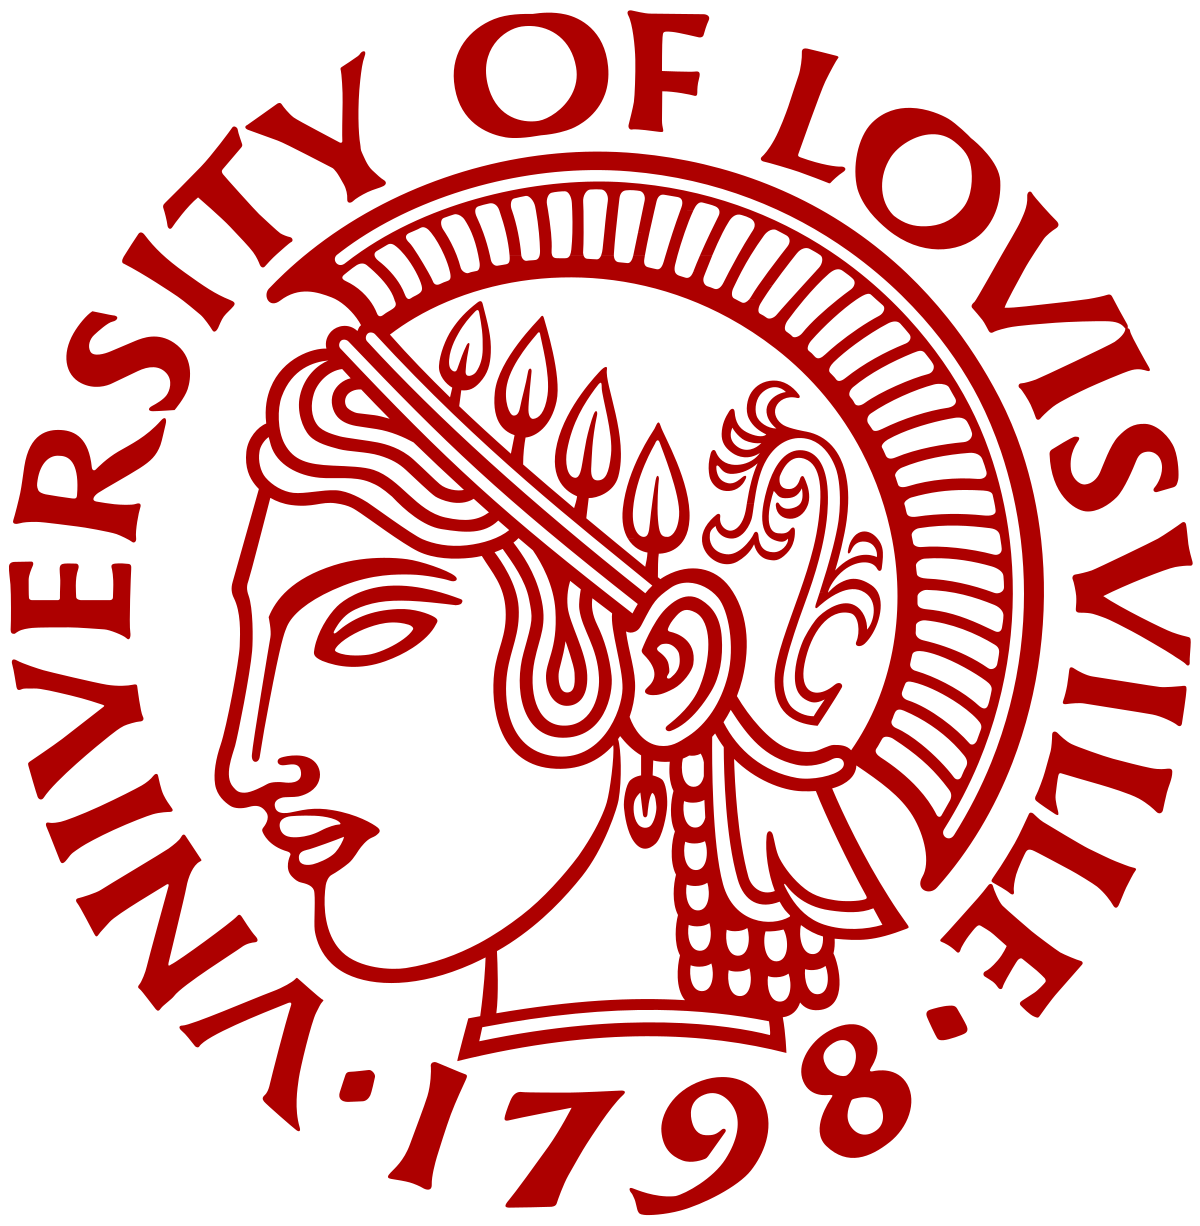 University of Louisville Cardinals Logo - University of Louisville